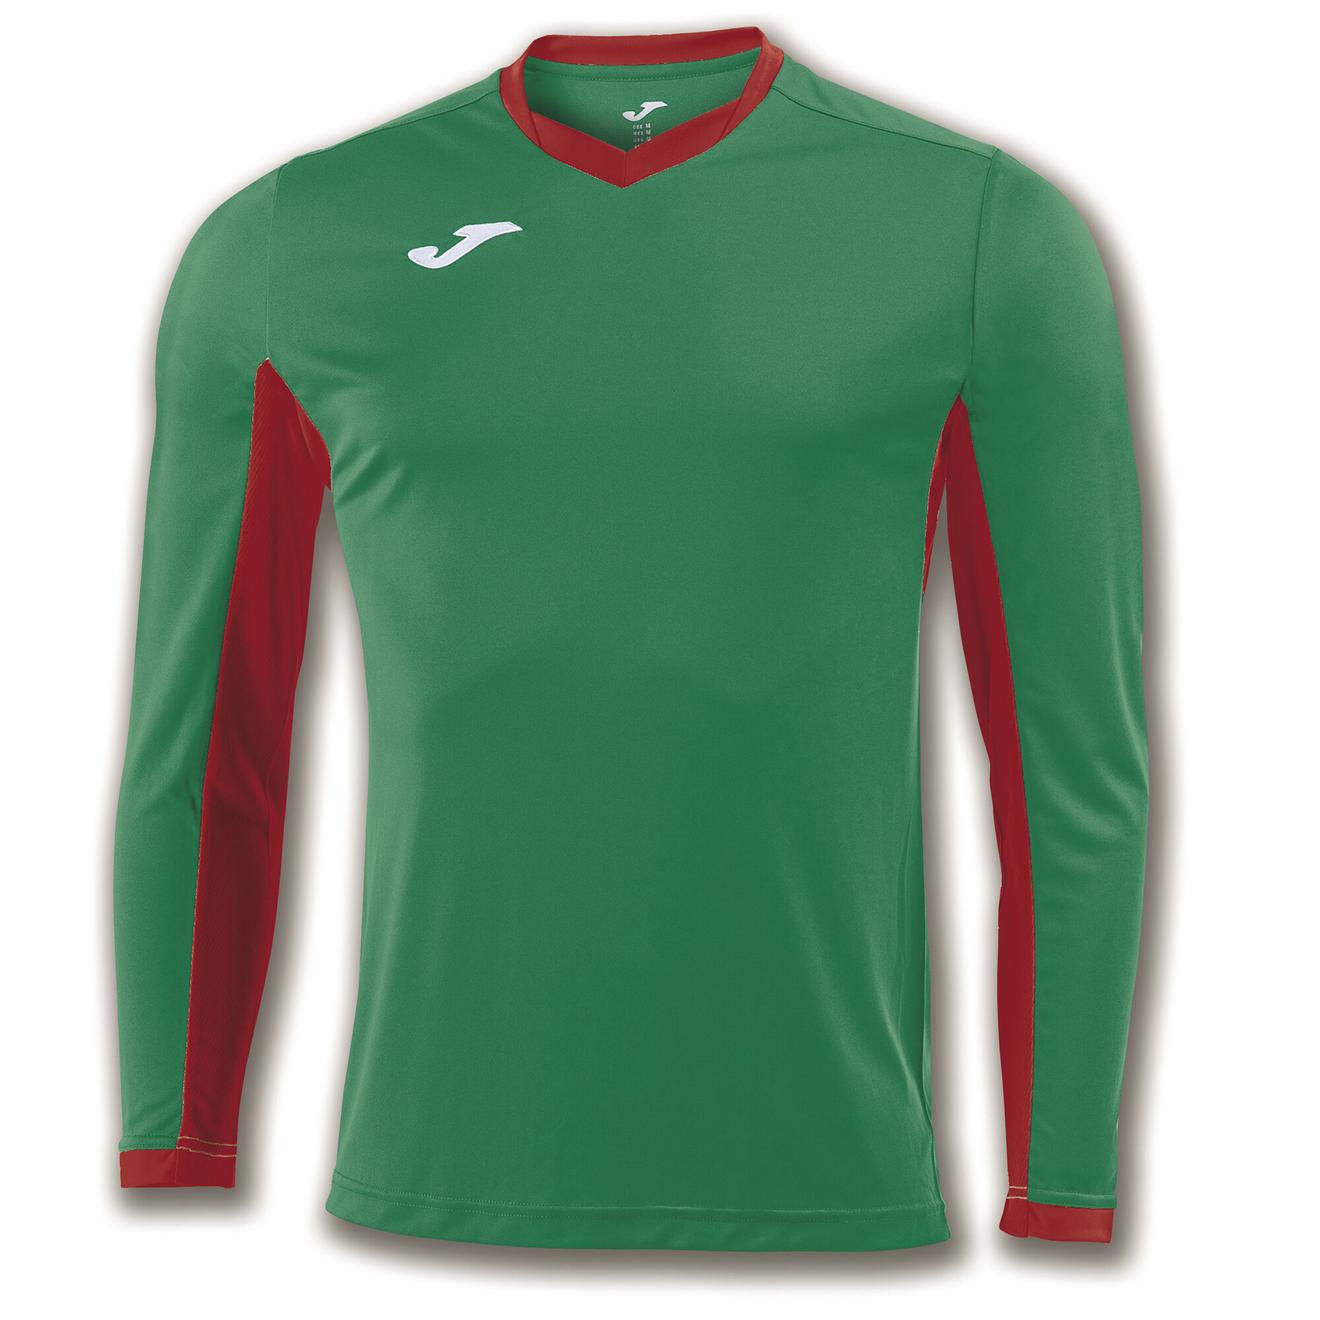 Oferta de Camiseta manga larga hombre Championship IV verde rojo por $7,75 en Joma